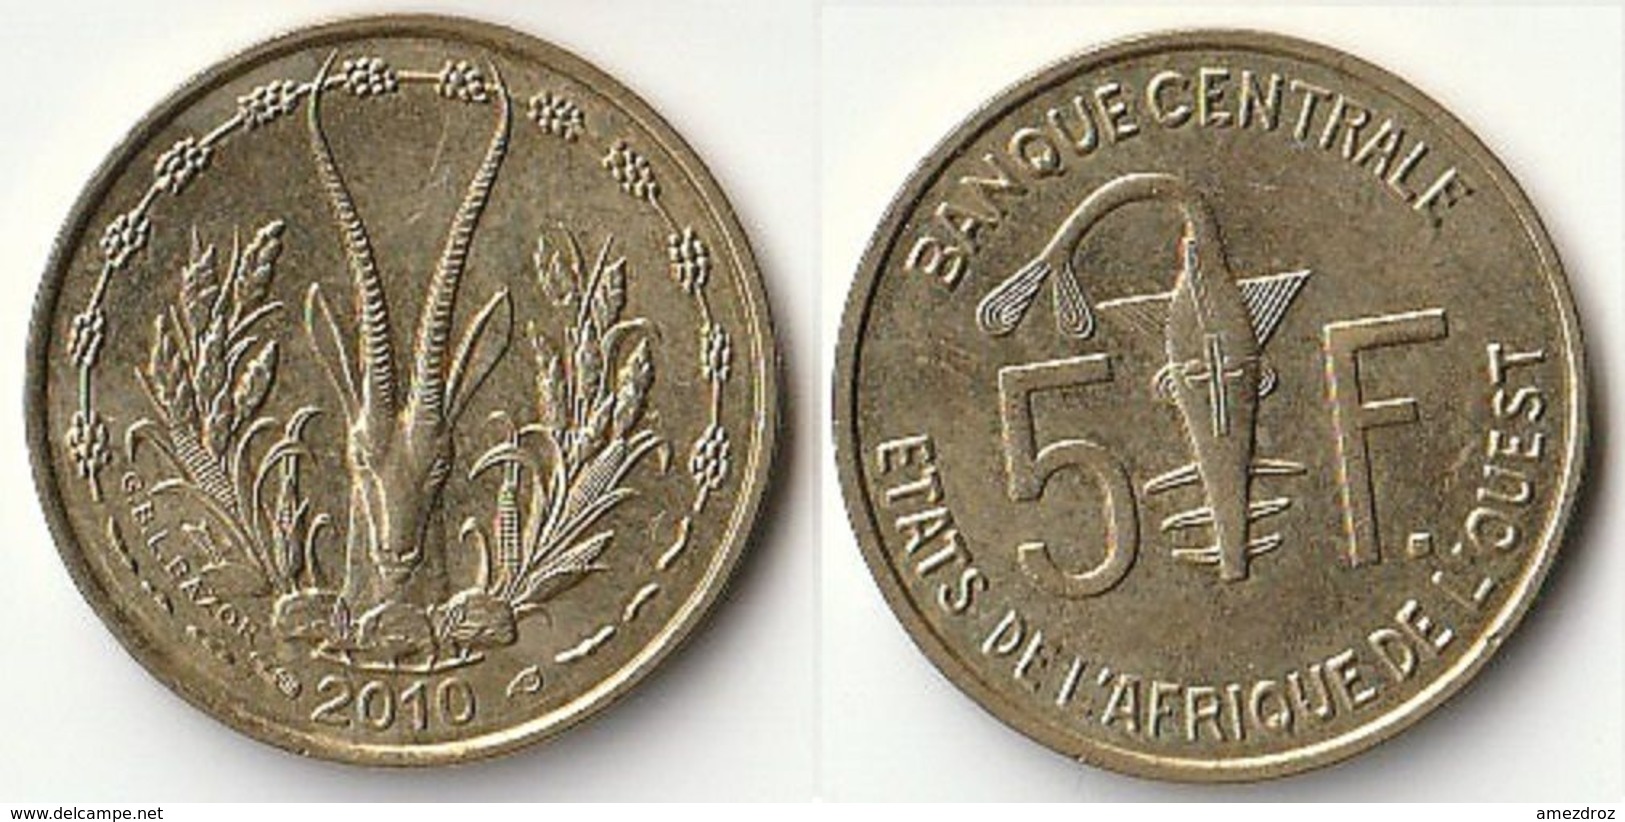 Pièce De 5 Francs CFA XOF 2010 Origine Côte D'Ivoire Afrique De L'Ouest (v) - Costa D'Avorio